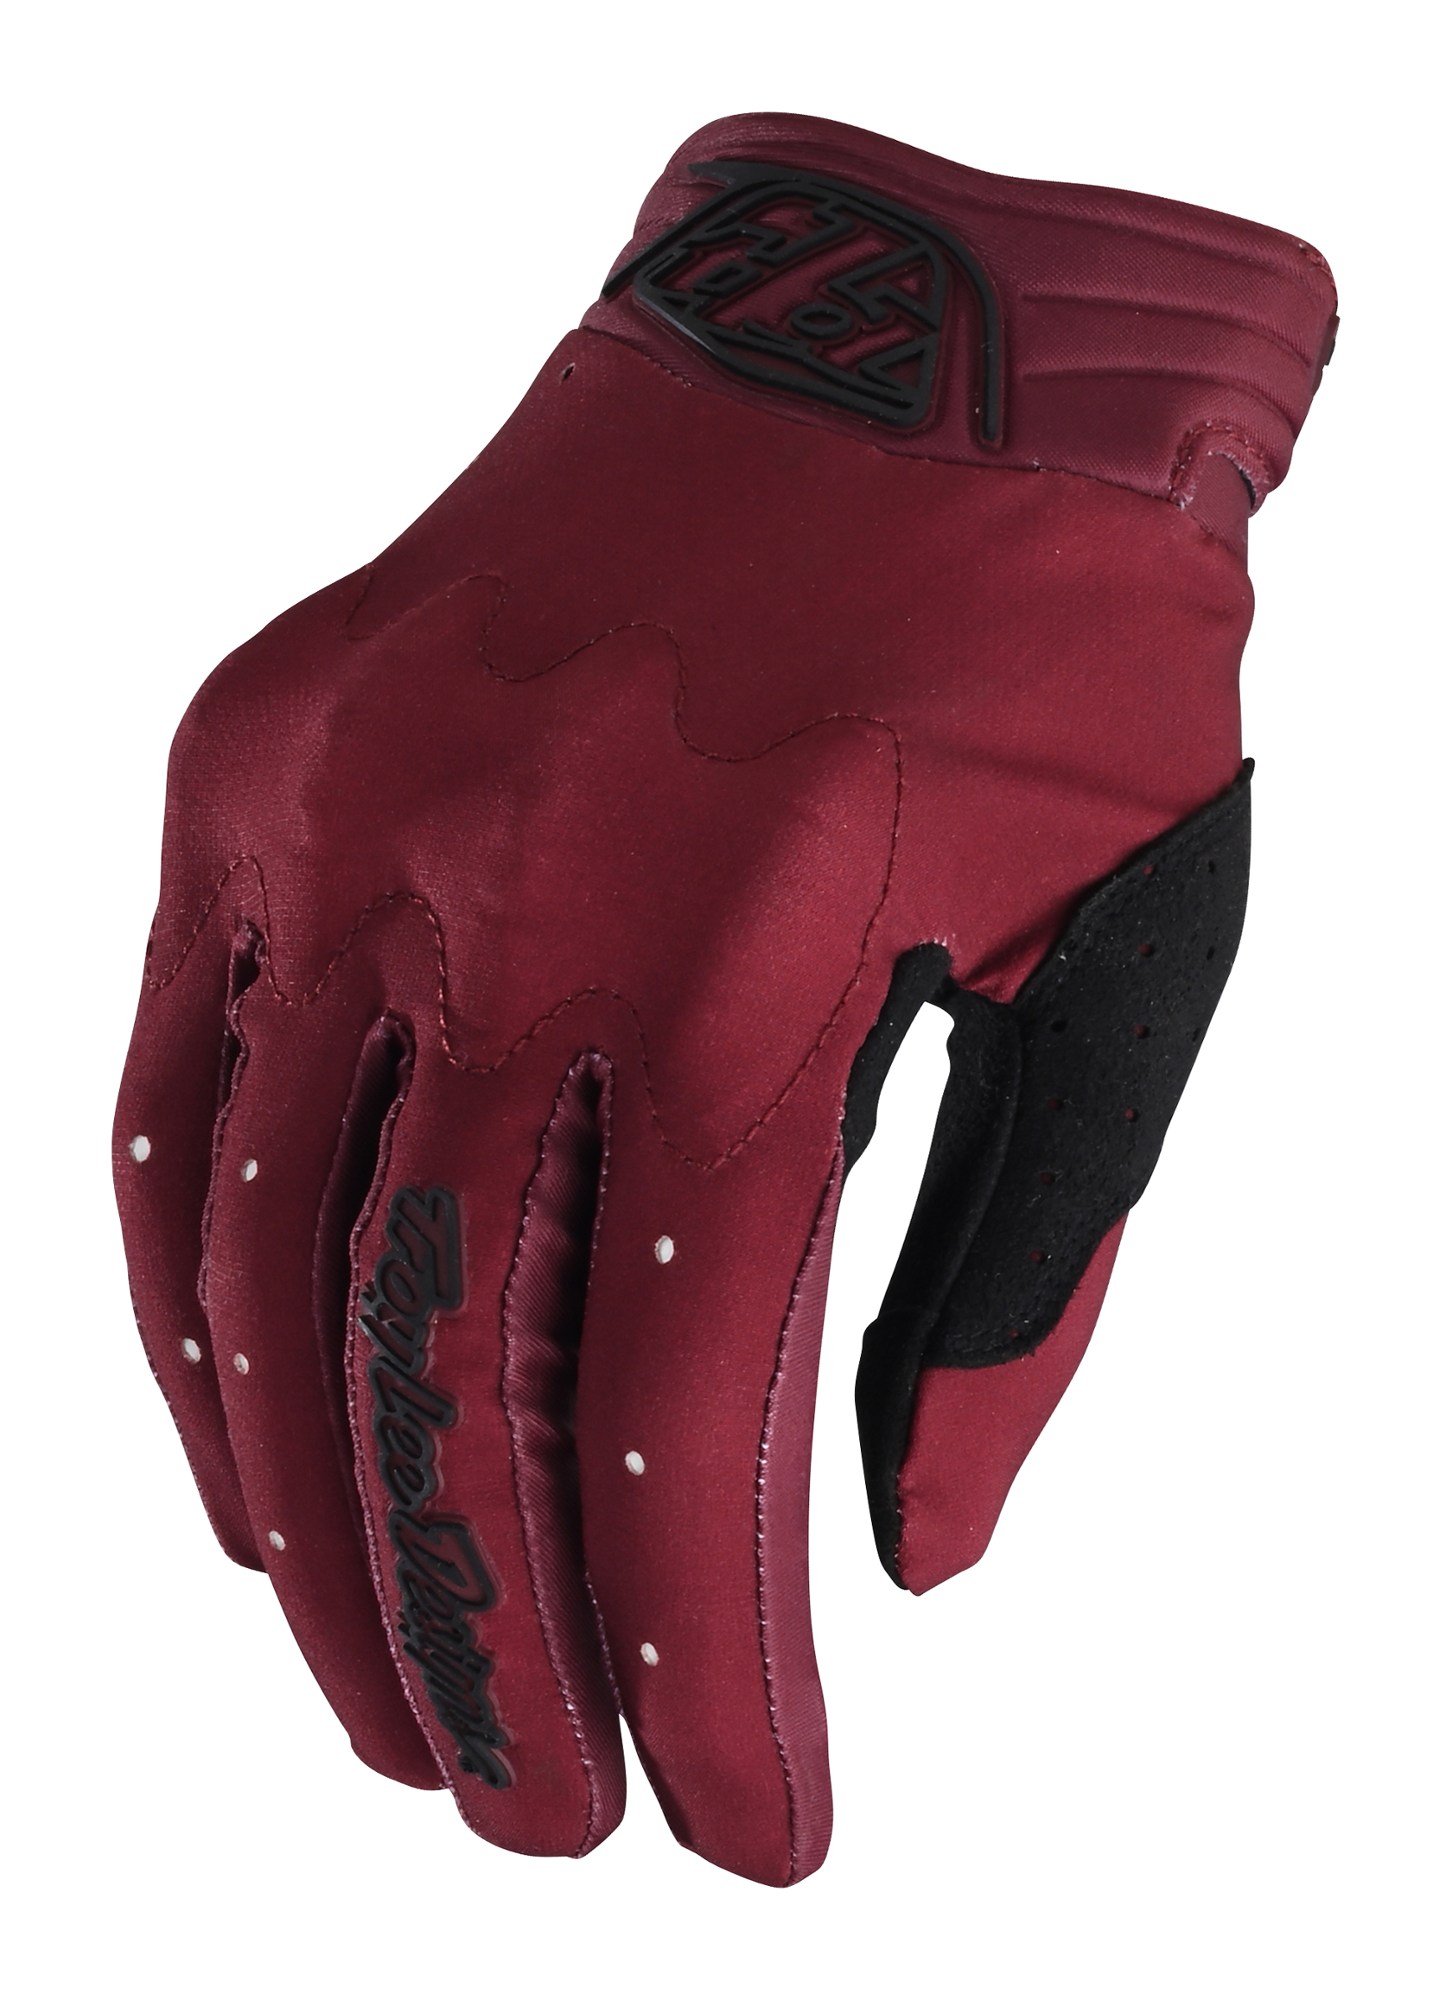 Велосипедные перчатки Gambit — женские Troy Lee Designs, красный